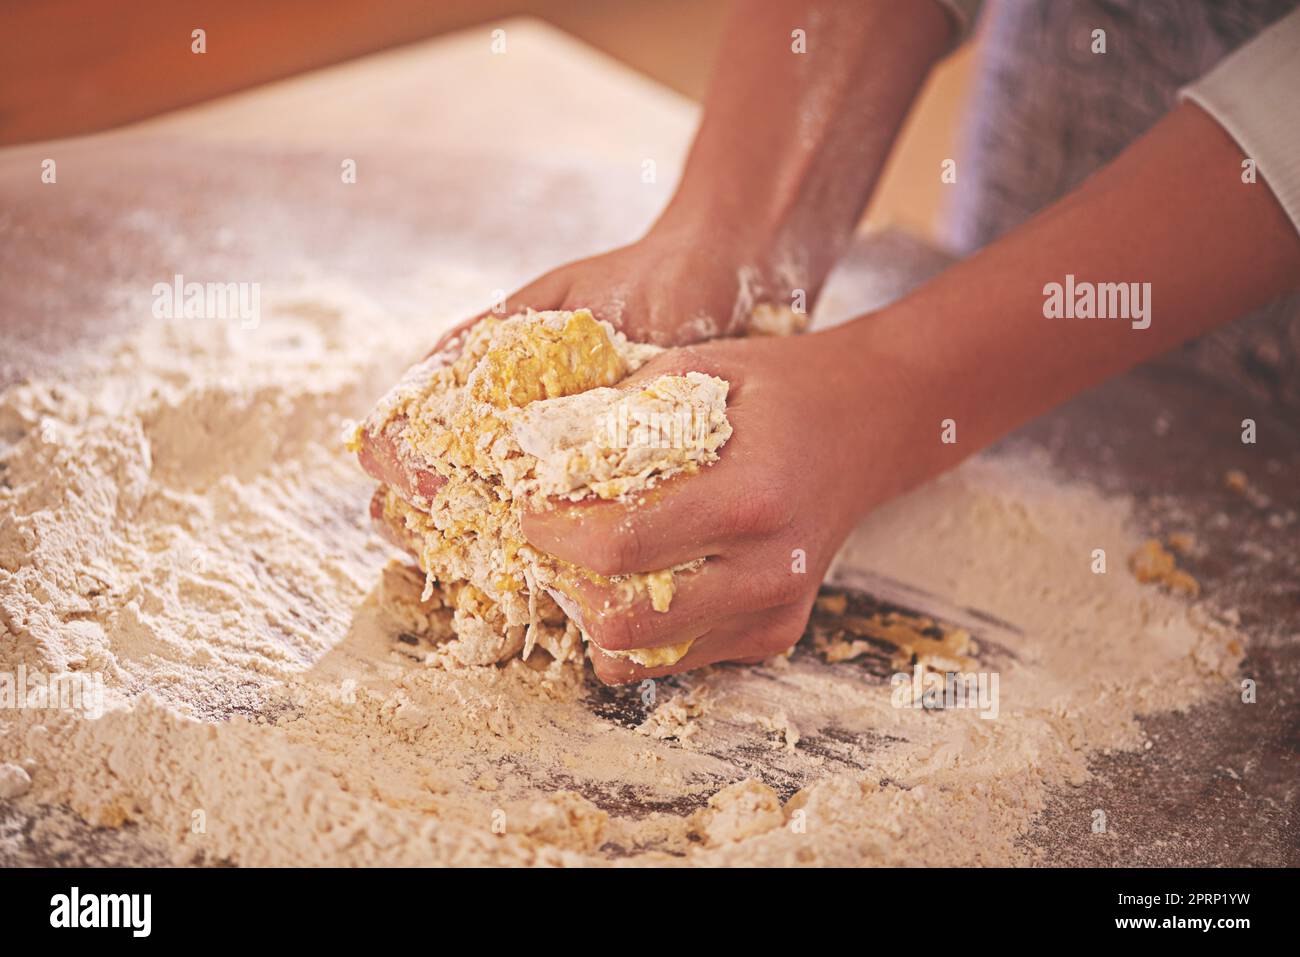 Die Kunst der Herstellung von Pasta. Eine Person, die Nudelteig auf einer bemehlten Tischplatte knetet. Stockfoto